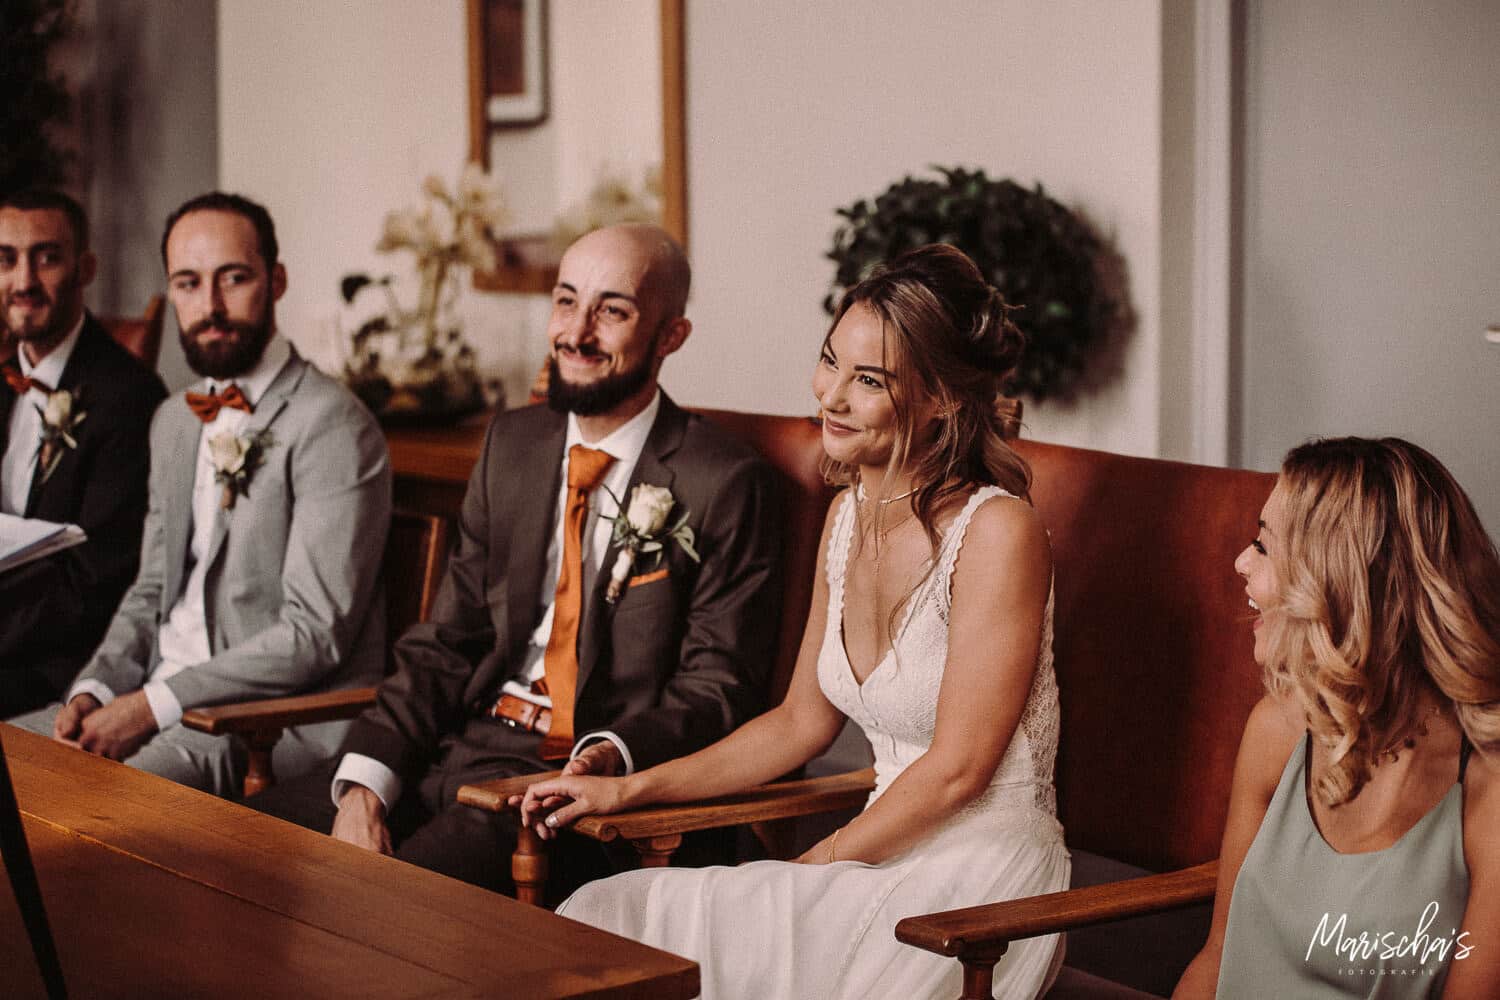 Bruidsfotograaf voor een bruidsreportage van een bruiloft in regio Zuid Holland